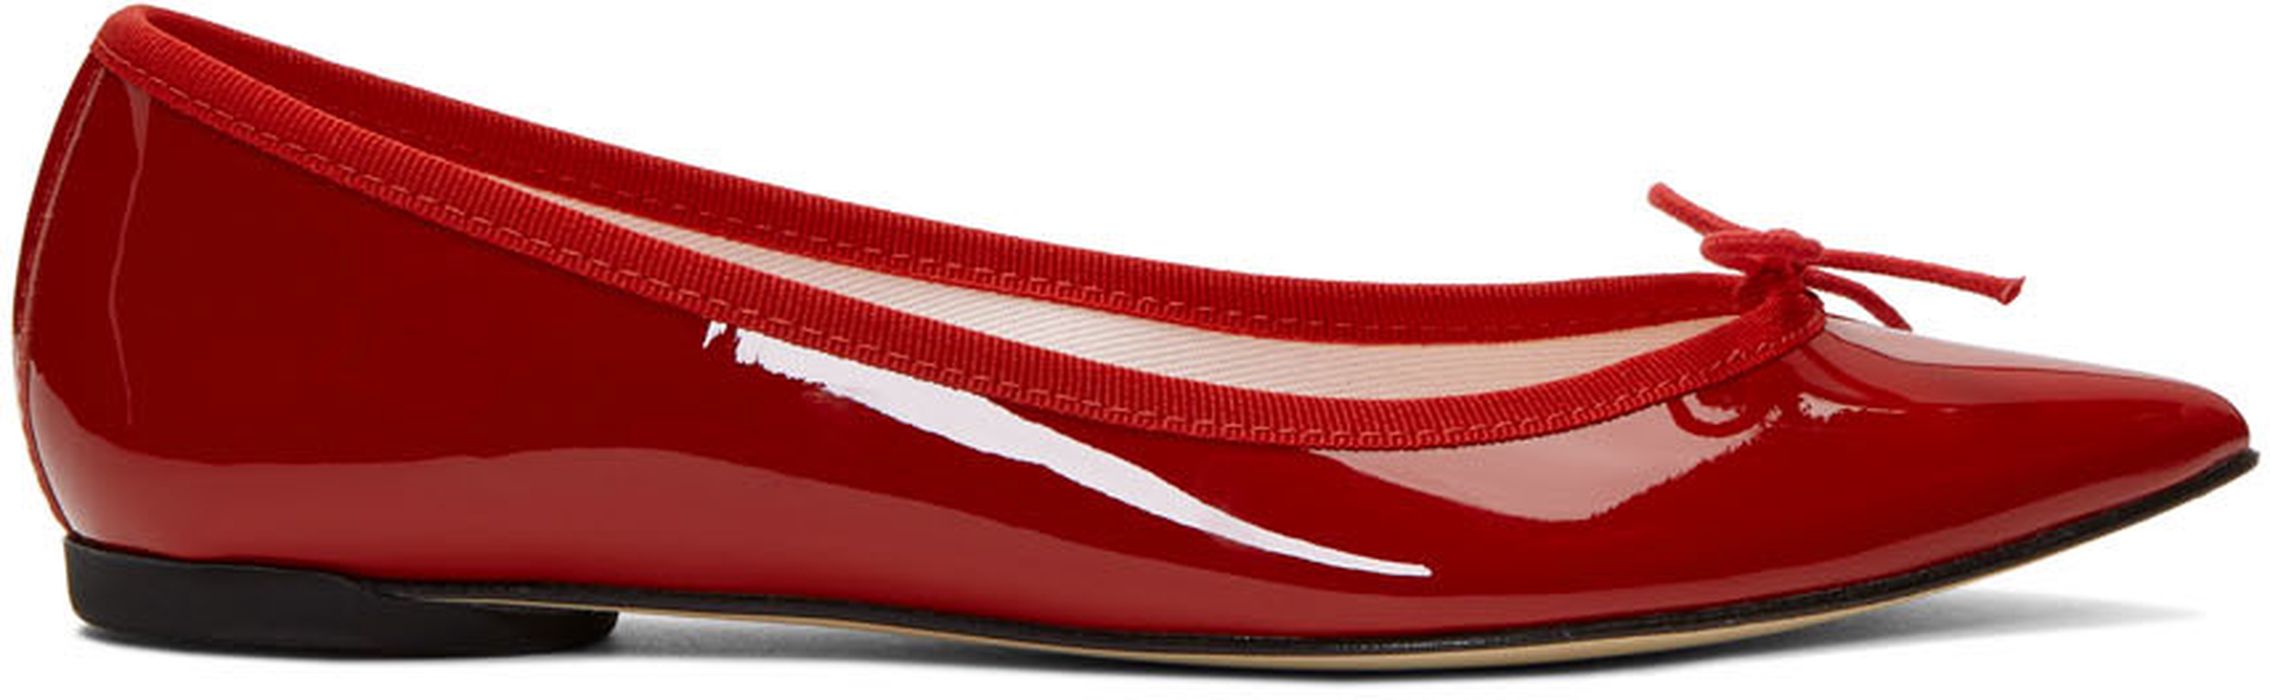 Repetto Red Patent Brigitte Ballerina Flats